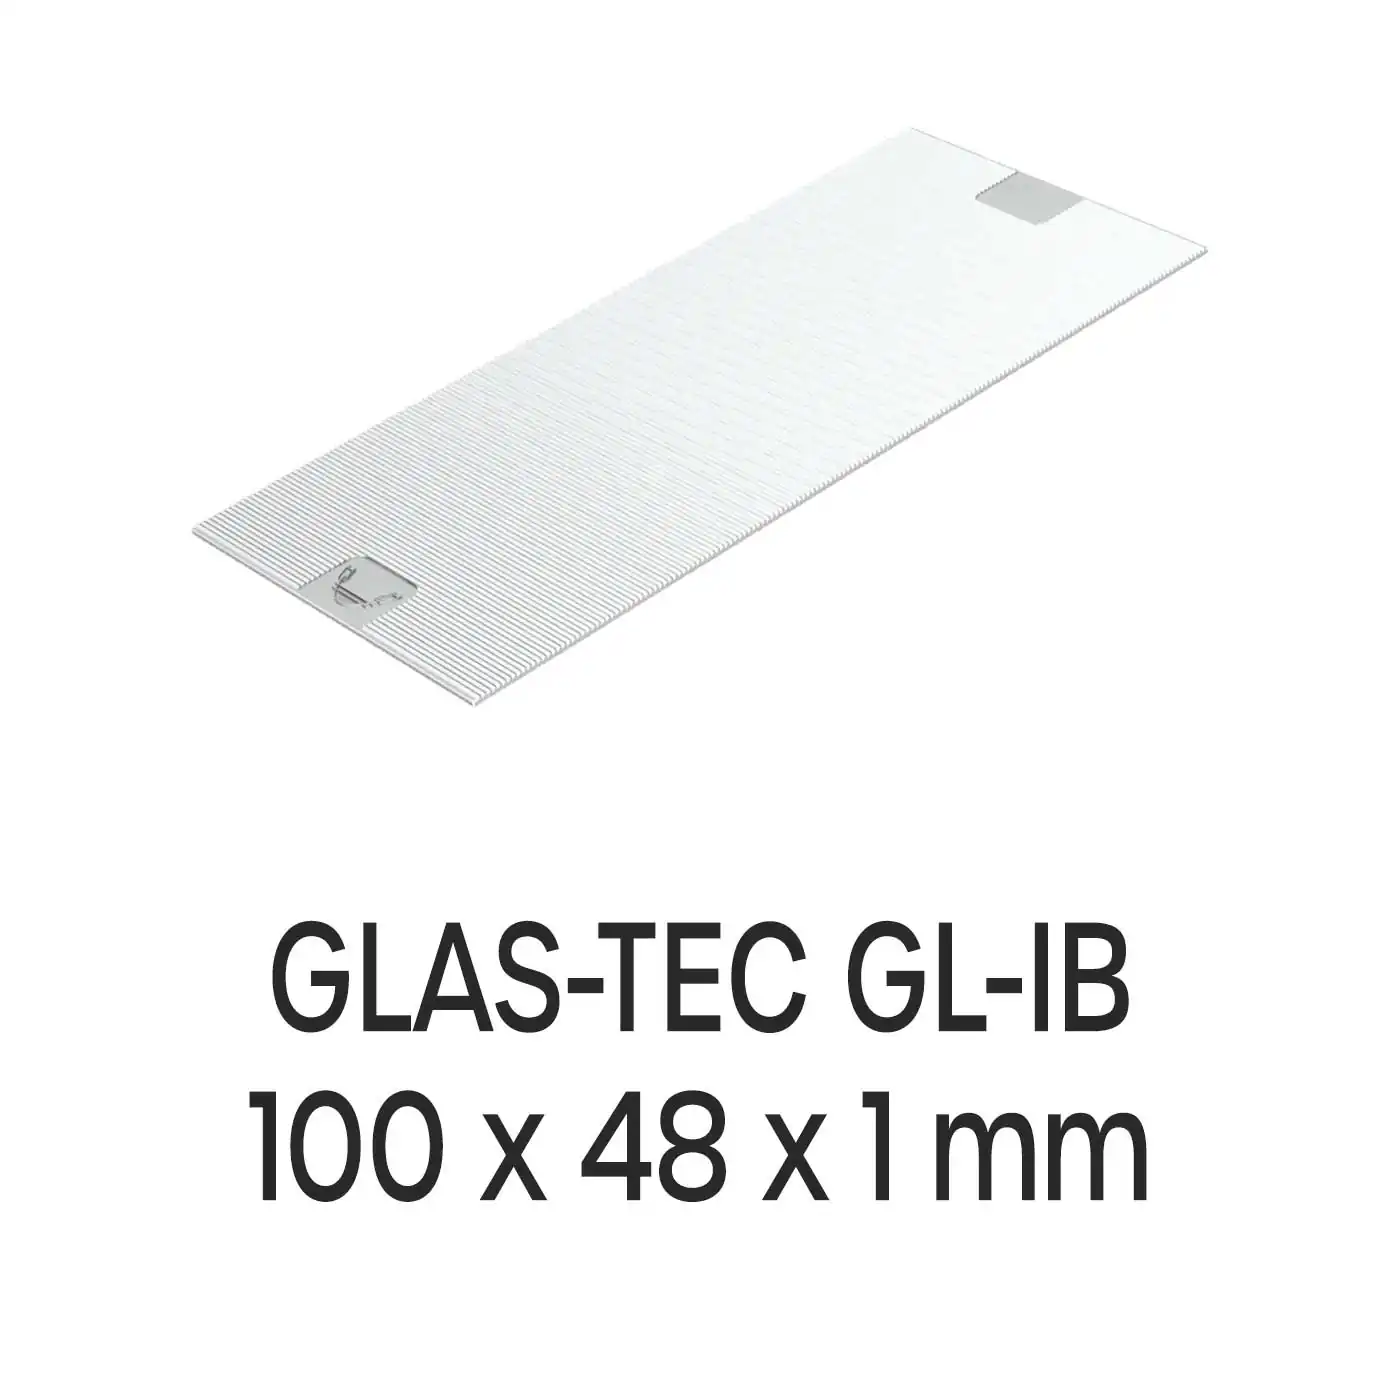 Roto Verglasungsklotz GLAS-TEC GL-IB, 100 x 48 x 1 mm, schwarz, 500 Stück